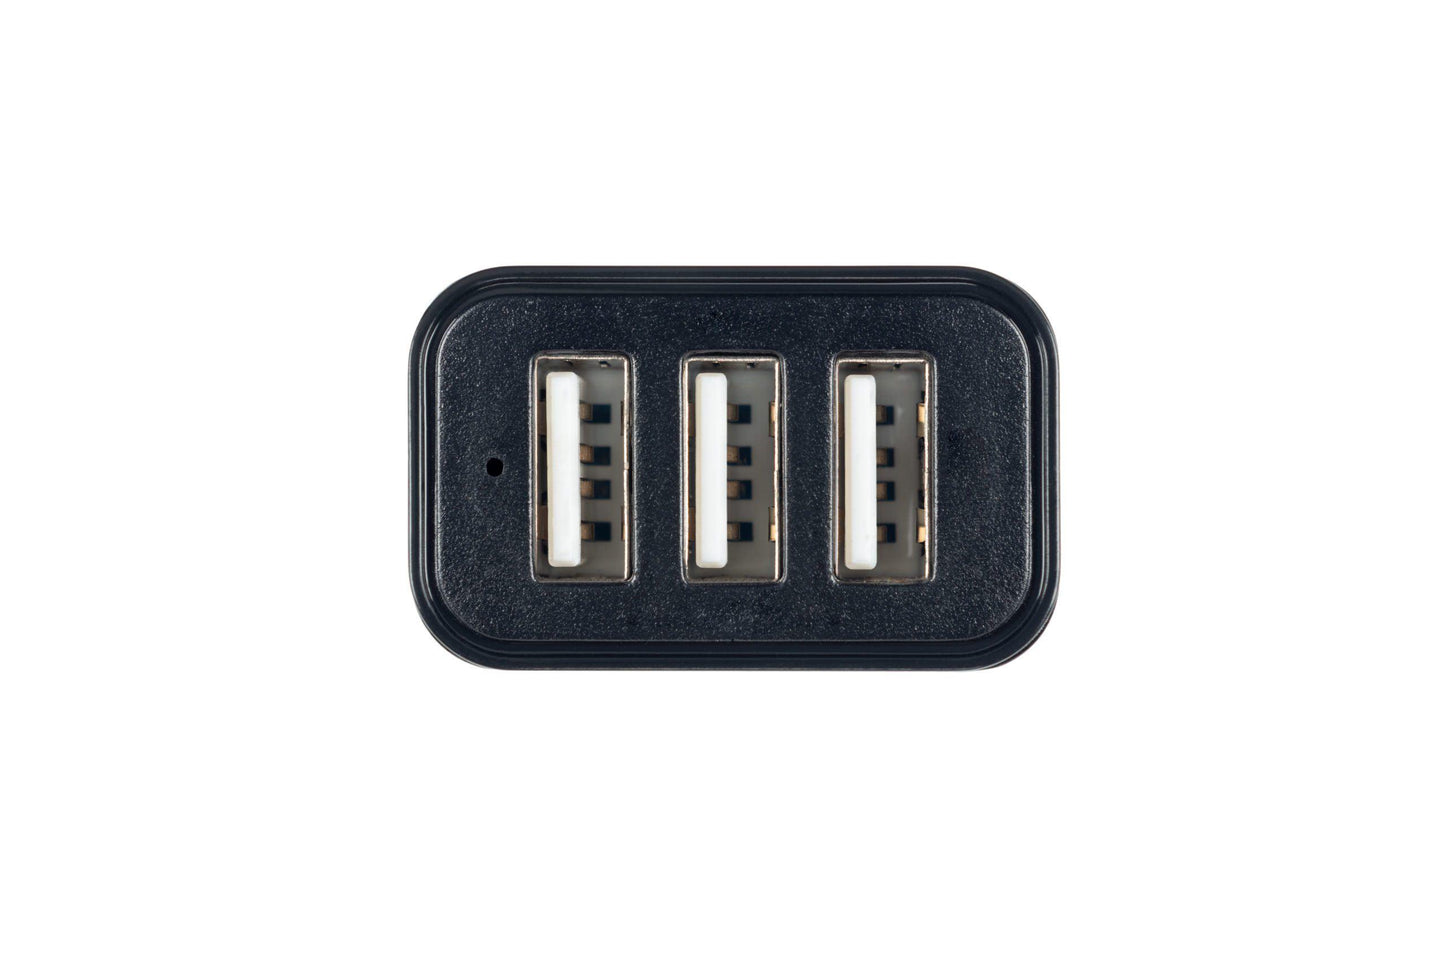 Xtorm Power Car-Plug 3 USB ports (Laddare & Kablar) från Xtorm. | TacNGear - Utrustning för polis och militär och outdoor.